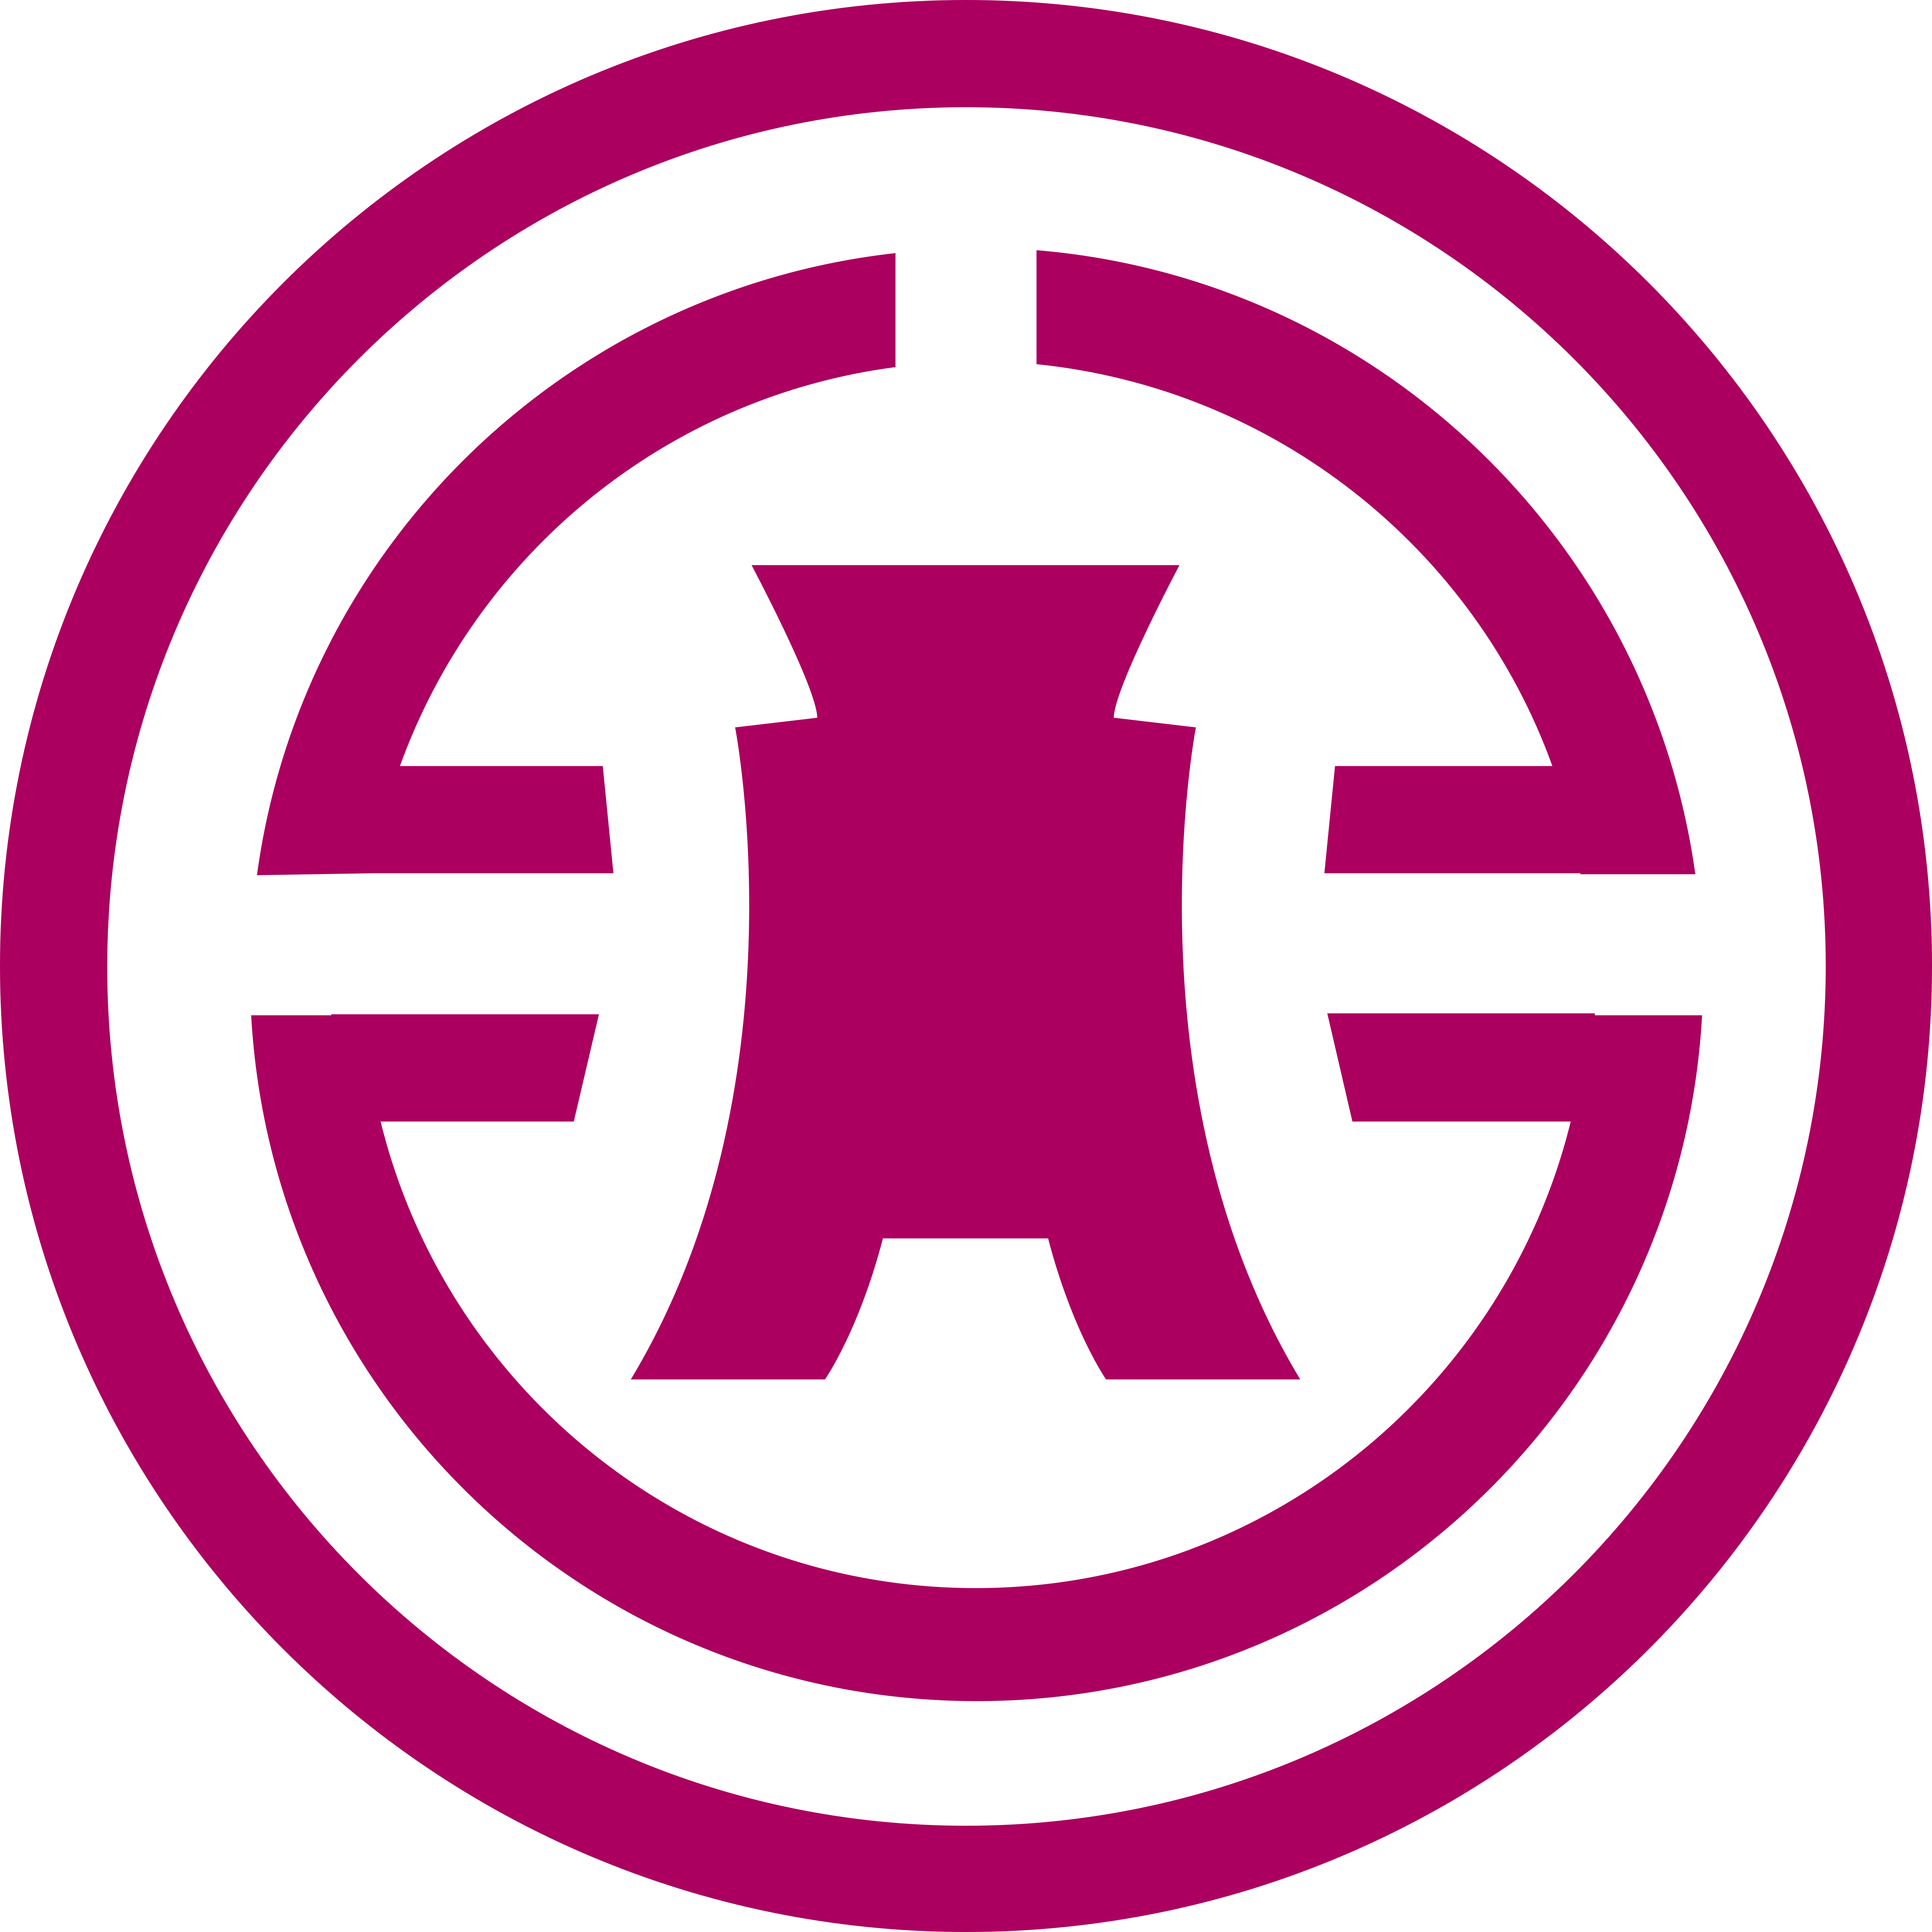 Bank Of Taiwan Logos Download